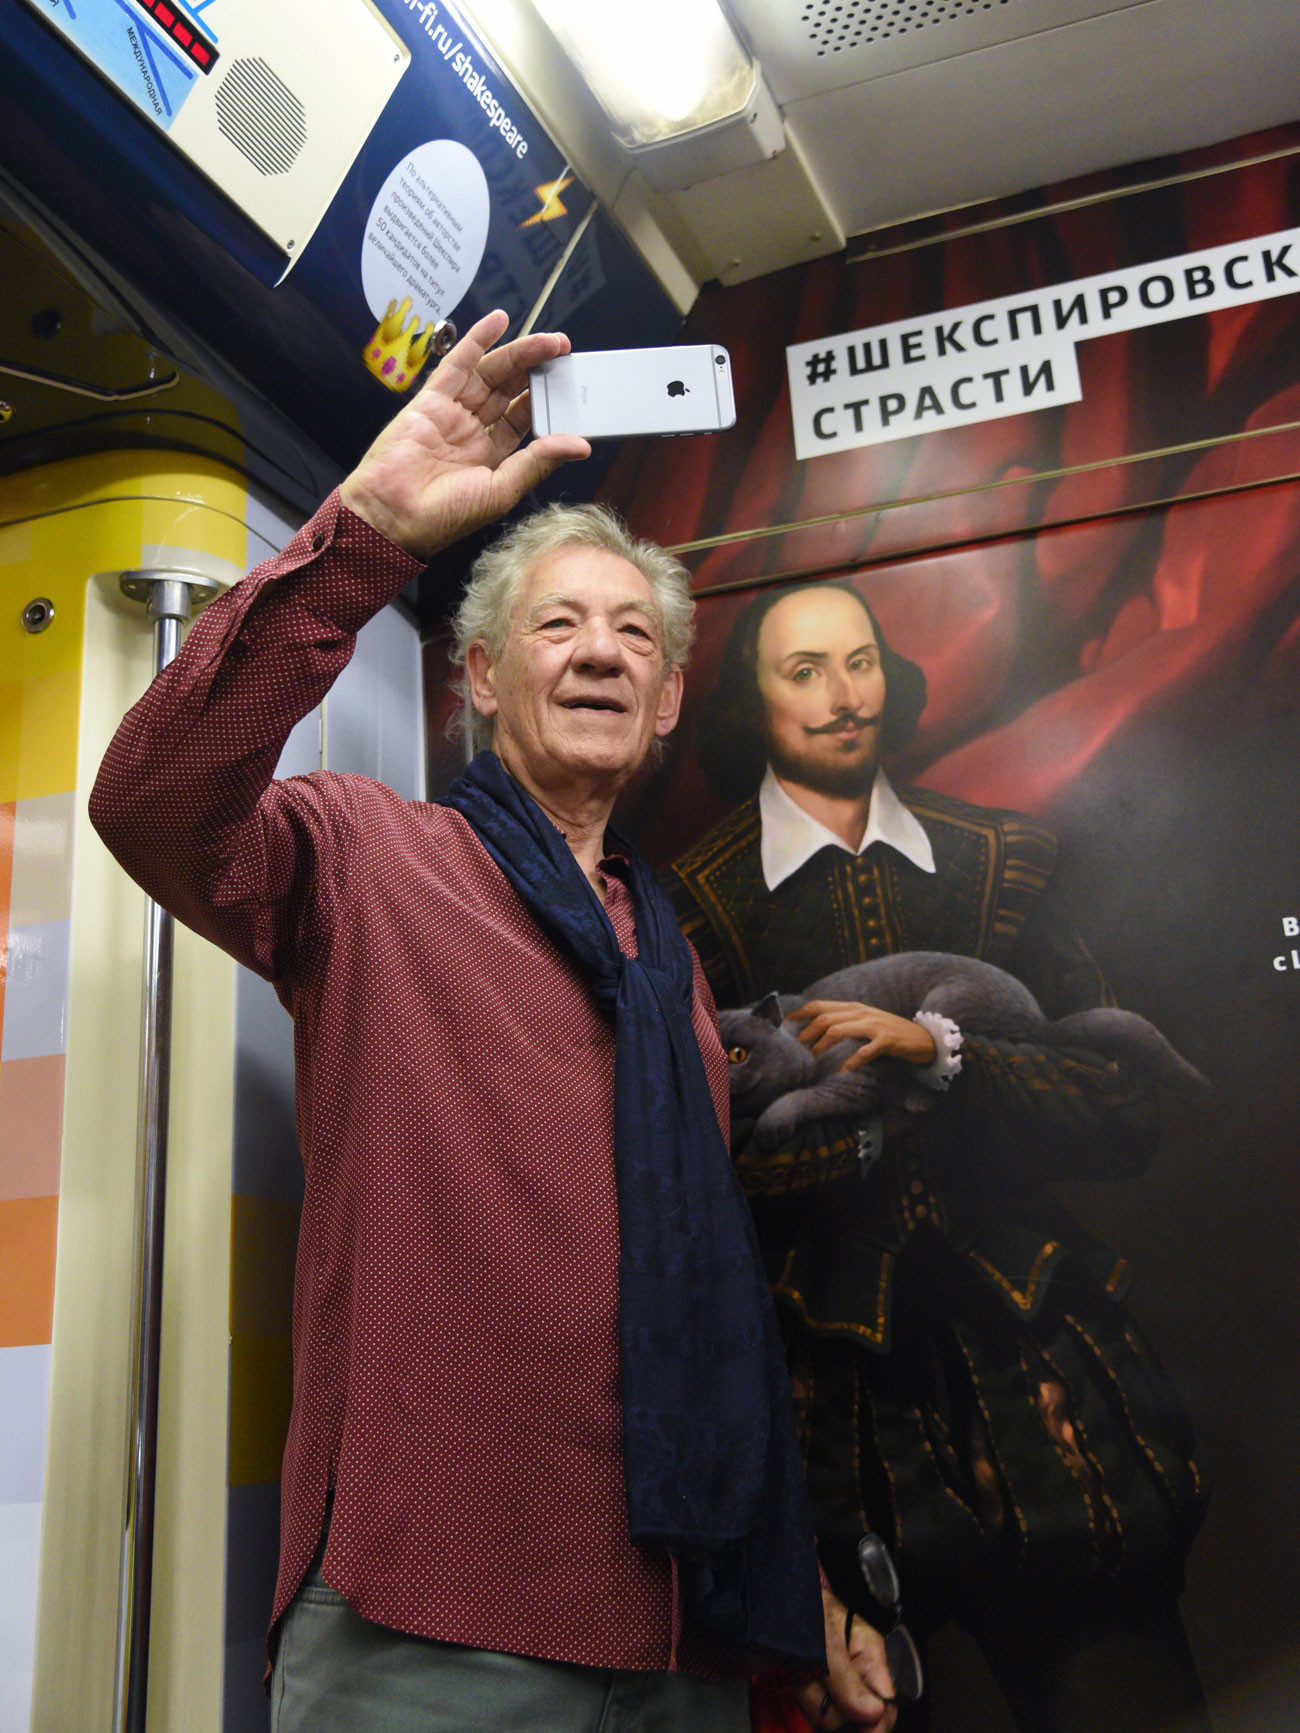 Ian McKellen rides Shakespeare train in Moscow metro.